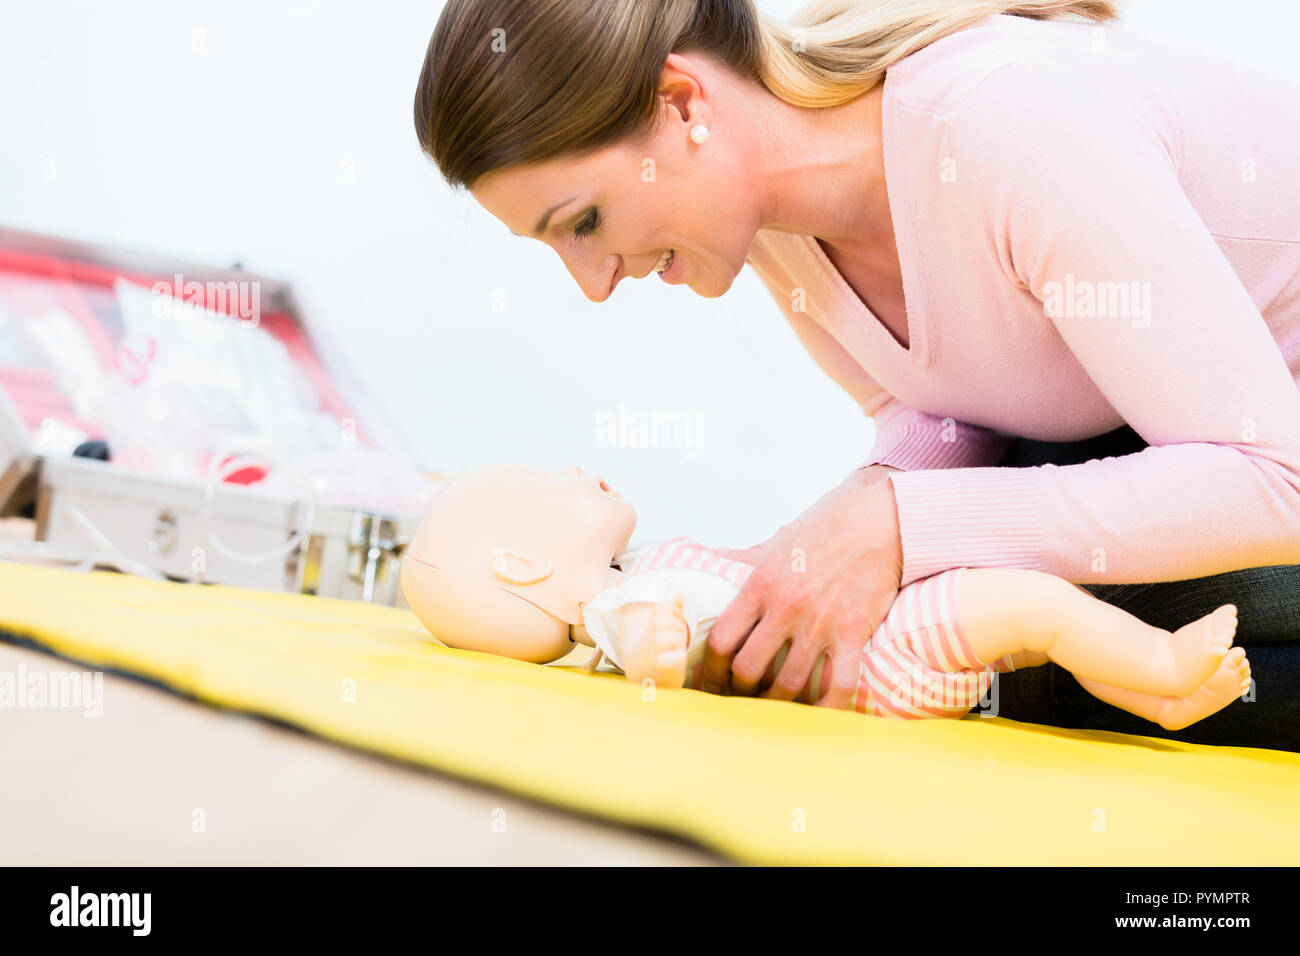 La donna nel corso di primo soccorso pratica di rilancio del neonato sulla baby d Foto Stock